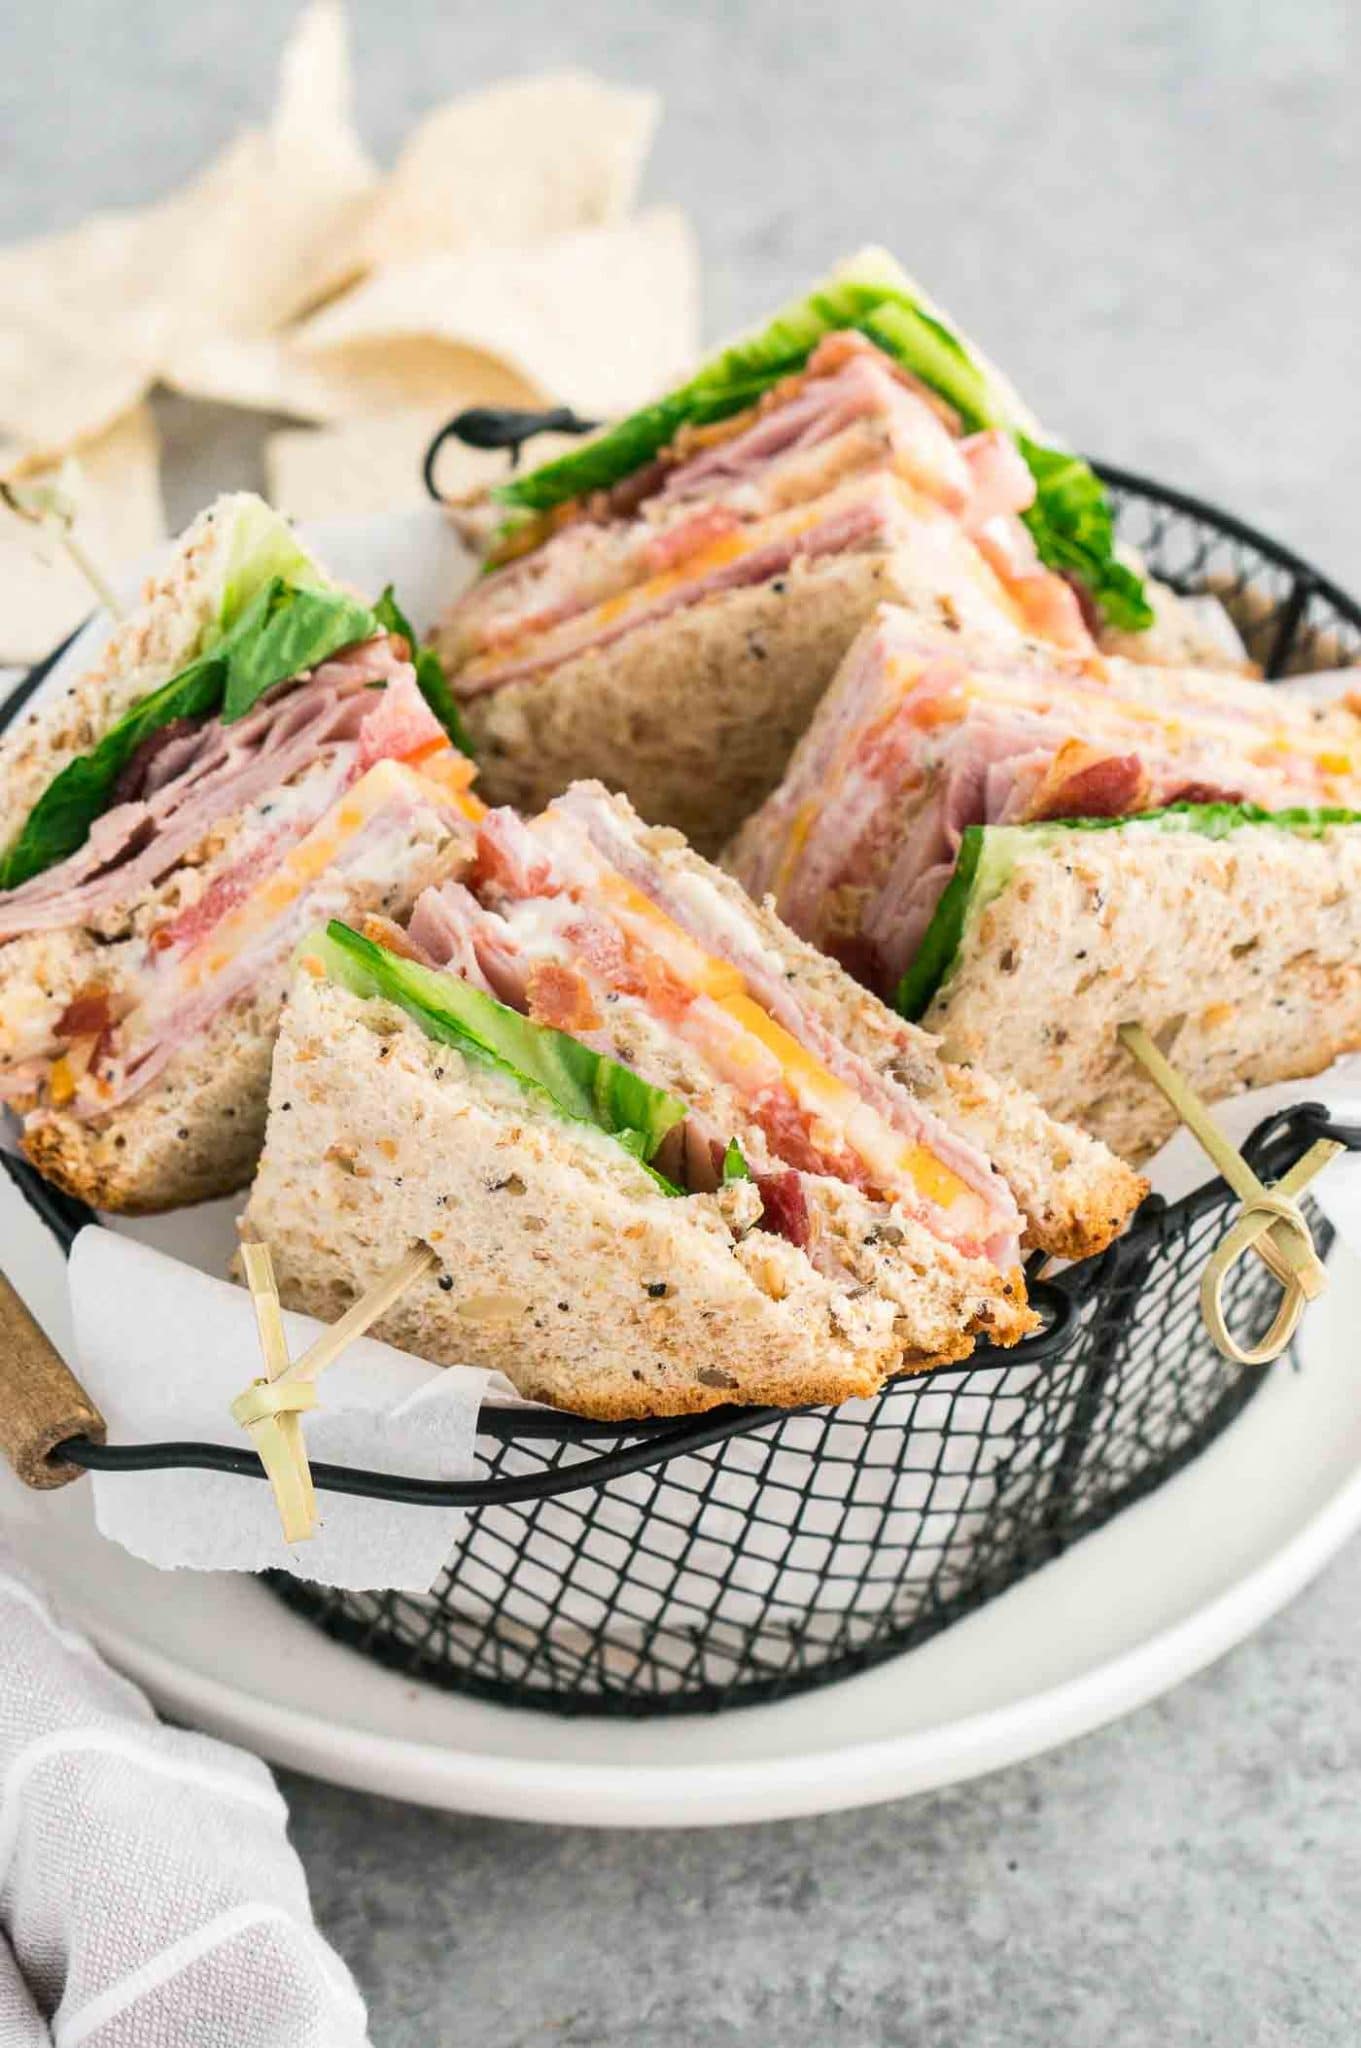 club sandwiches cut in triangles in a basket